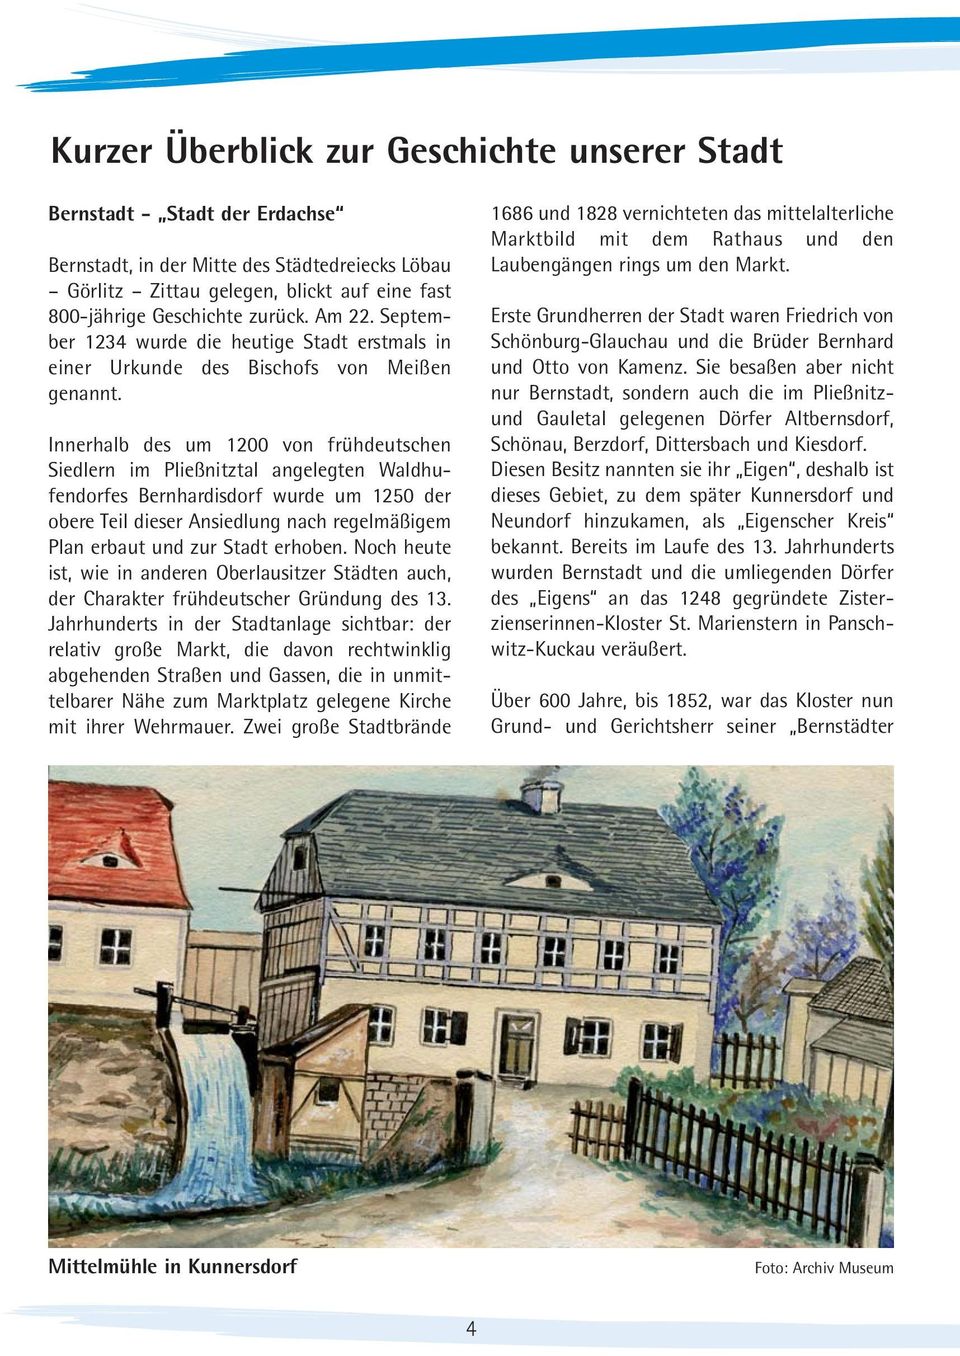 Innerhalb des um 1200 von frühdeutschen Siedlern im Pließnitztal angelegten Waldhufendorfes Bernhardisdorf wurde um 1250 der obere Teil dieser Ansiedlung nach regelmäßigem Plan erbaut und zur Stadt